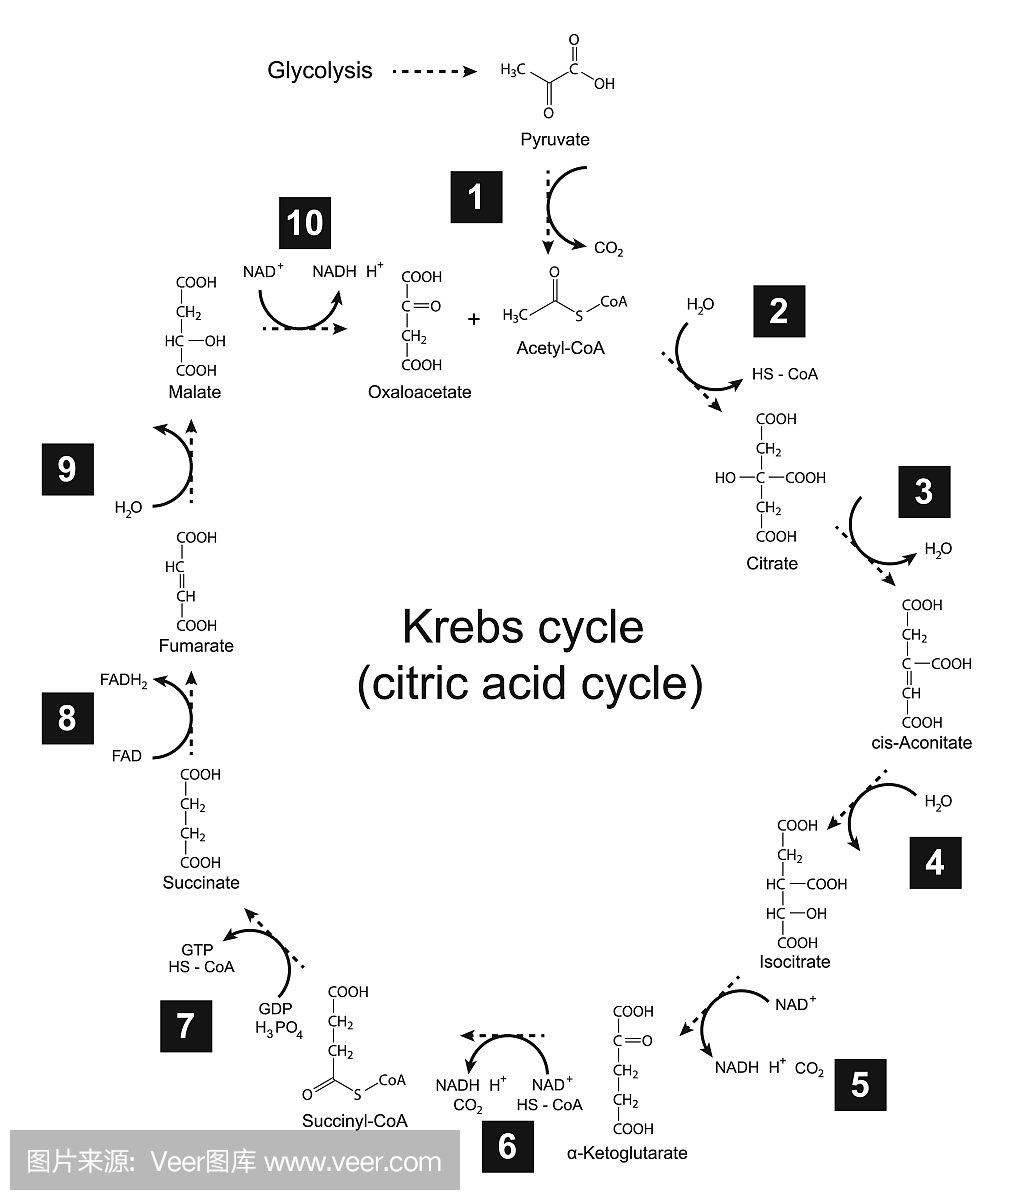 克雷布斯循环 - 三羧酸(柠檬酸)循环的例证